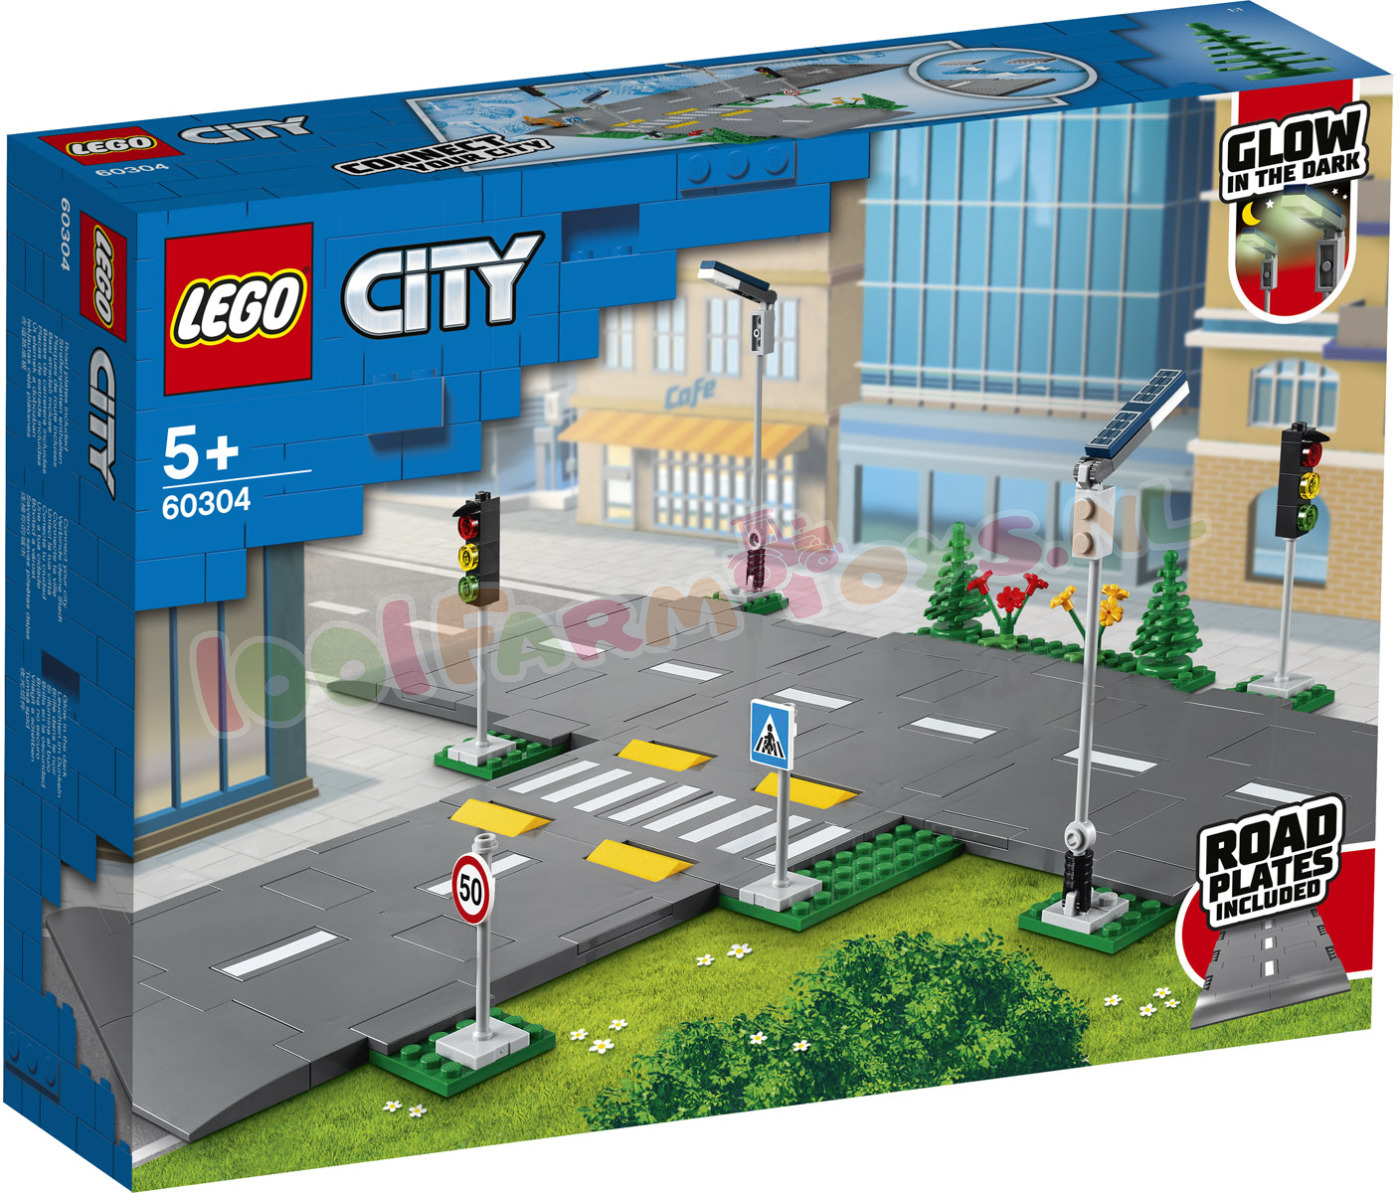 LEGO CITY WegenPlaten - 60304 - LEGO - LEGO - 1001Farmtoys landbouwspeelgoed - NIEUW ontwerp eigen wegen en kruisingen van enkel dubbelbaans